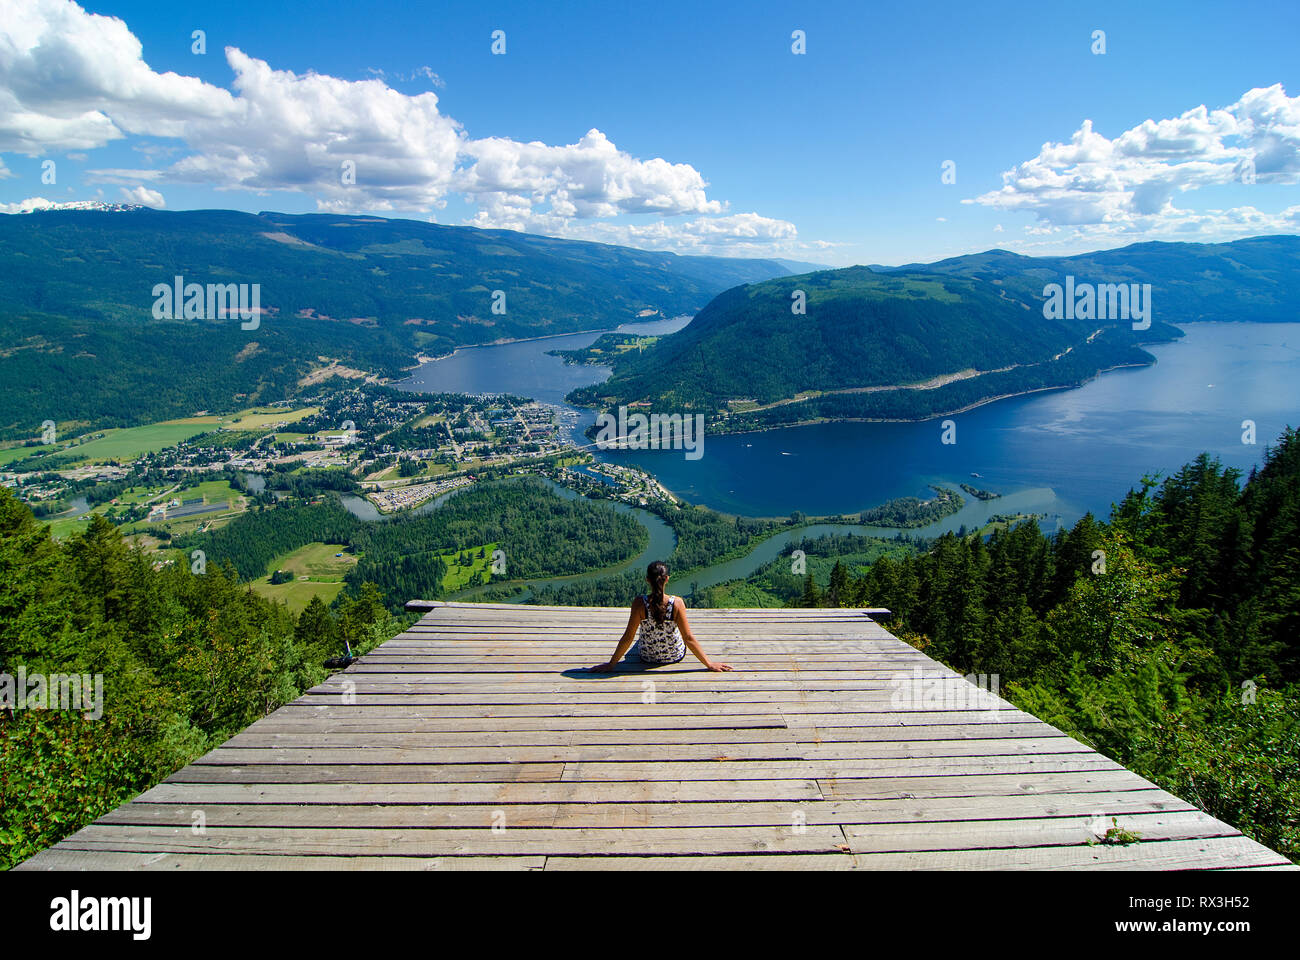 La mujer goza de una extraordinaria verano viewscape desde el planeador rampa con vistas Sicamous, el Eagle River y Shuswap Lake en British Columbia, Canadá - MR1 Foto de stock